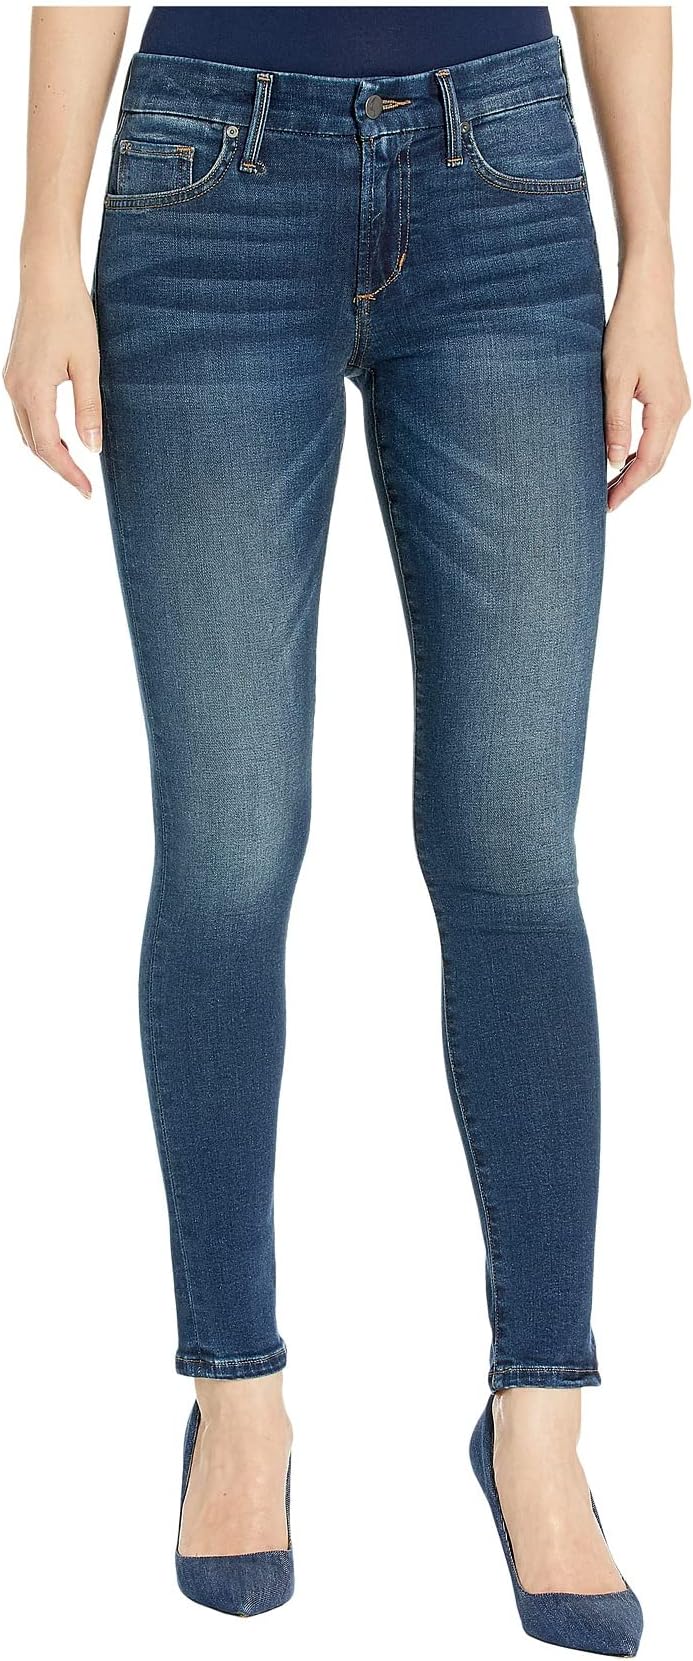 Джинсы The Icon Ankle in Stephaney Joe's Jeans, цвет Stephaney